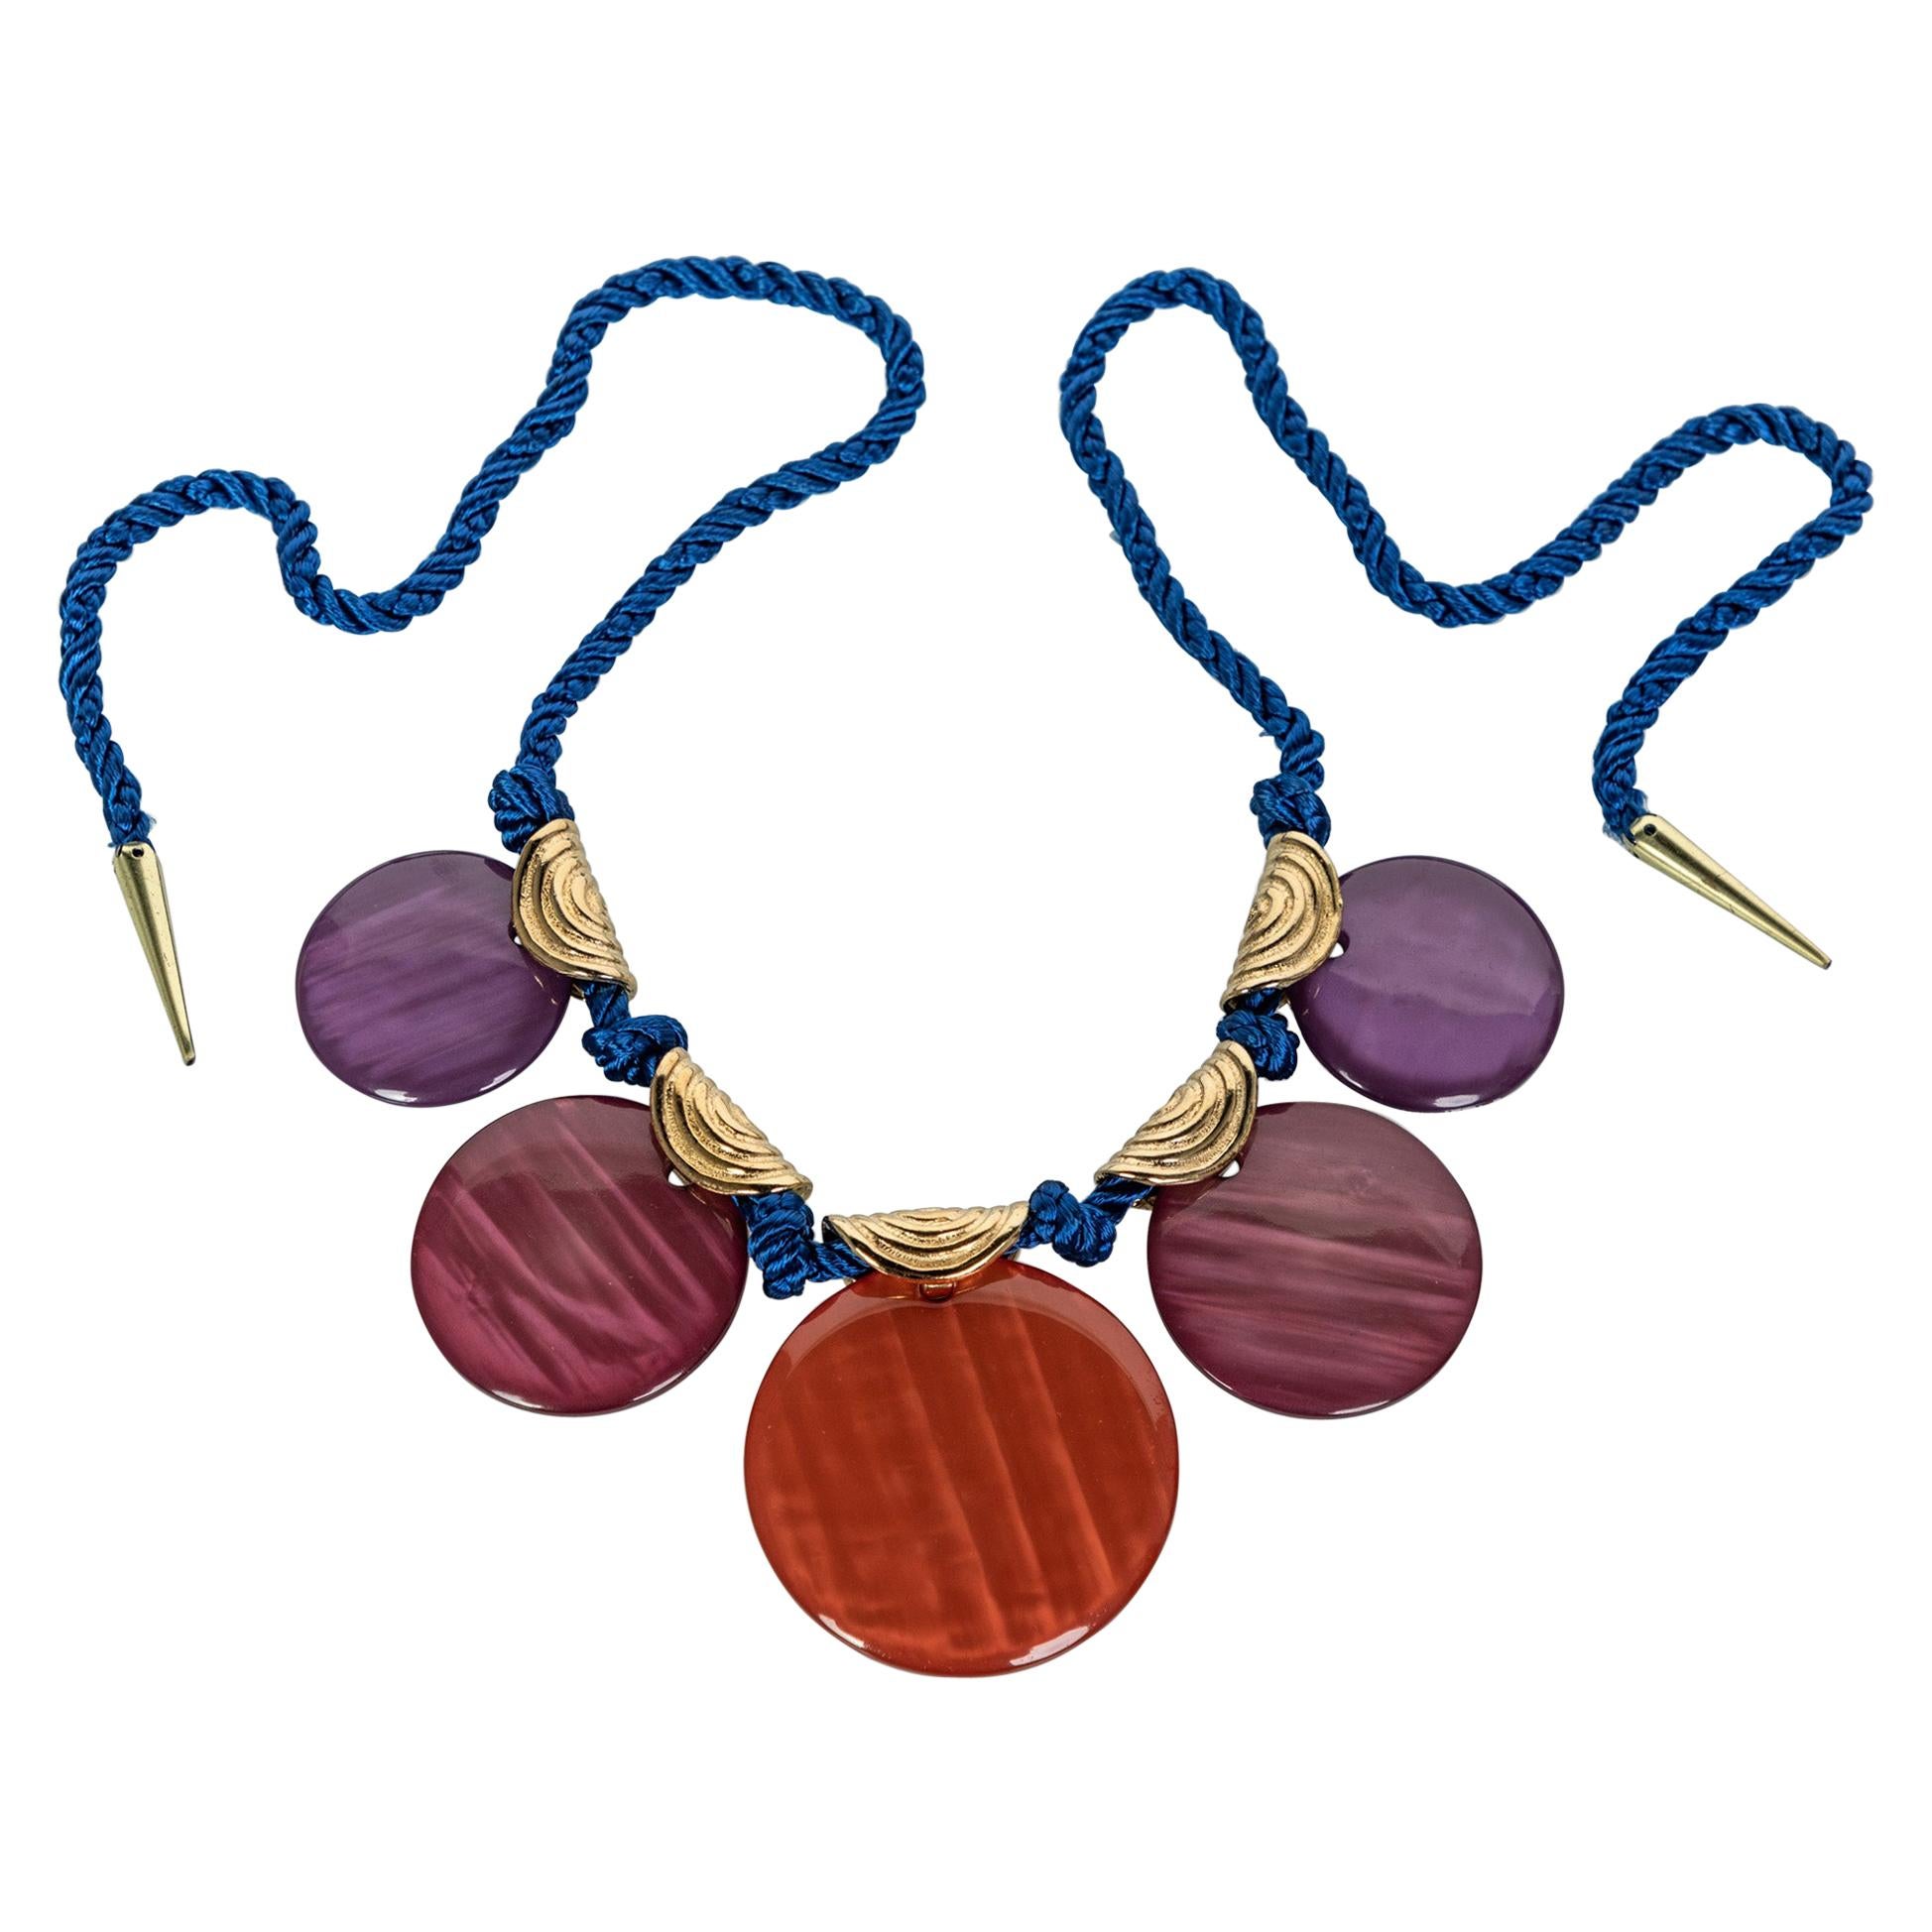 Vintage Yves Saint Laurent Ysl Multi-Color Disc Silk Cord Necklace